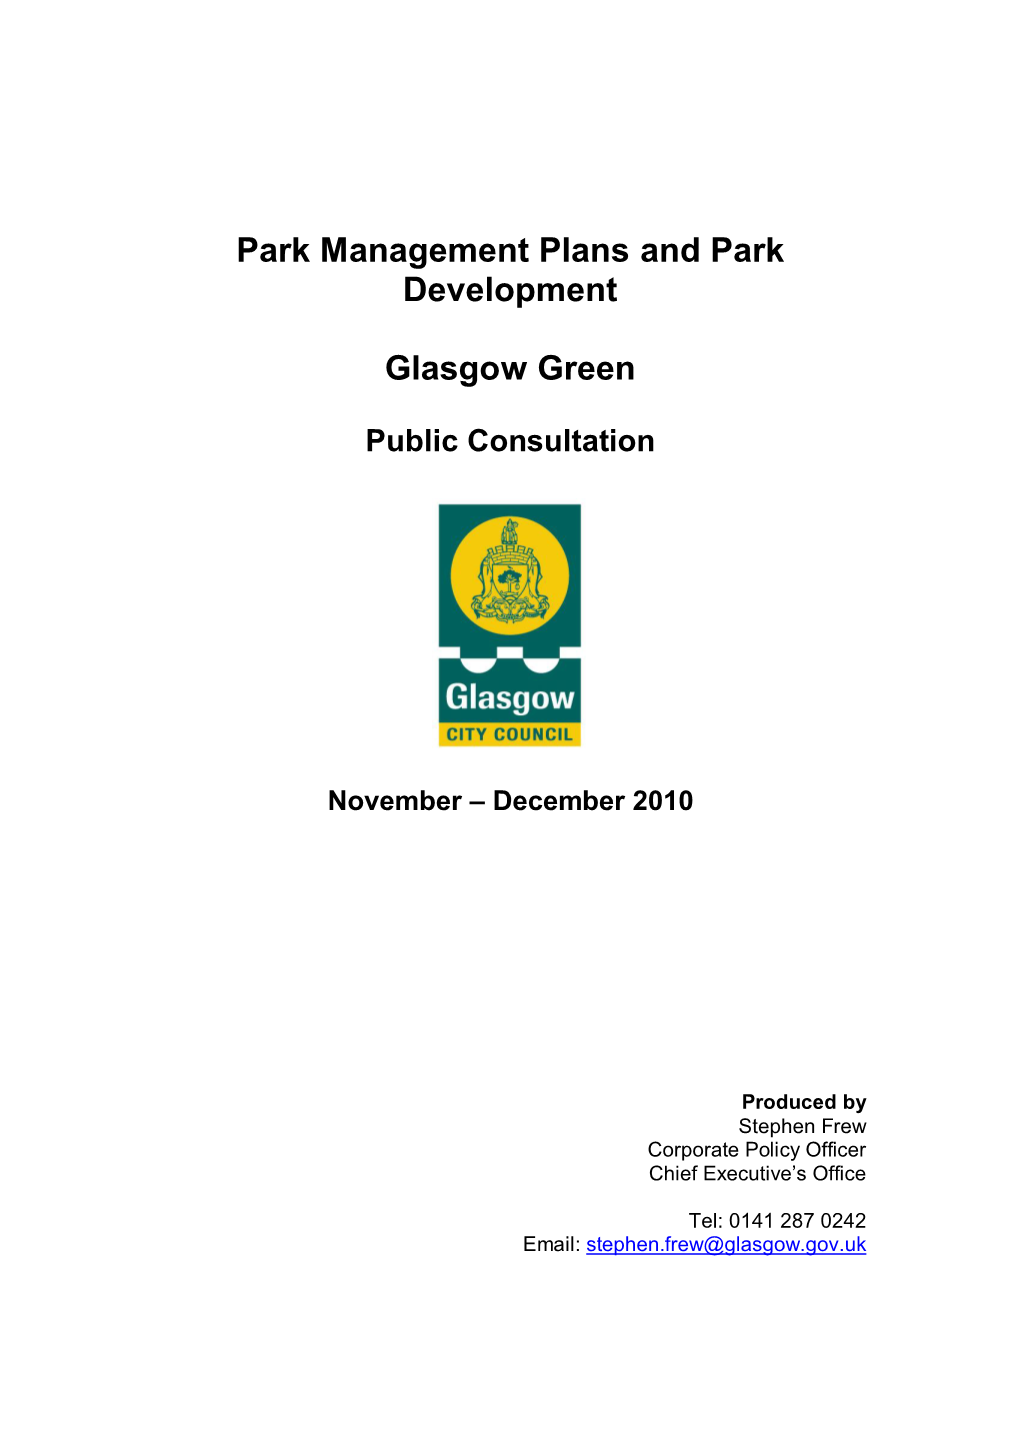 Park Management Plans and Park Development Glasgow Green